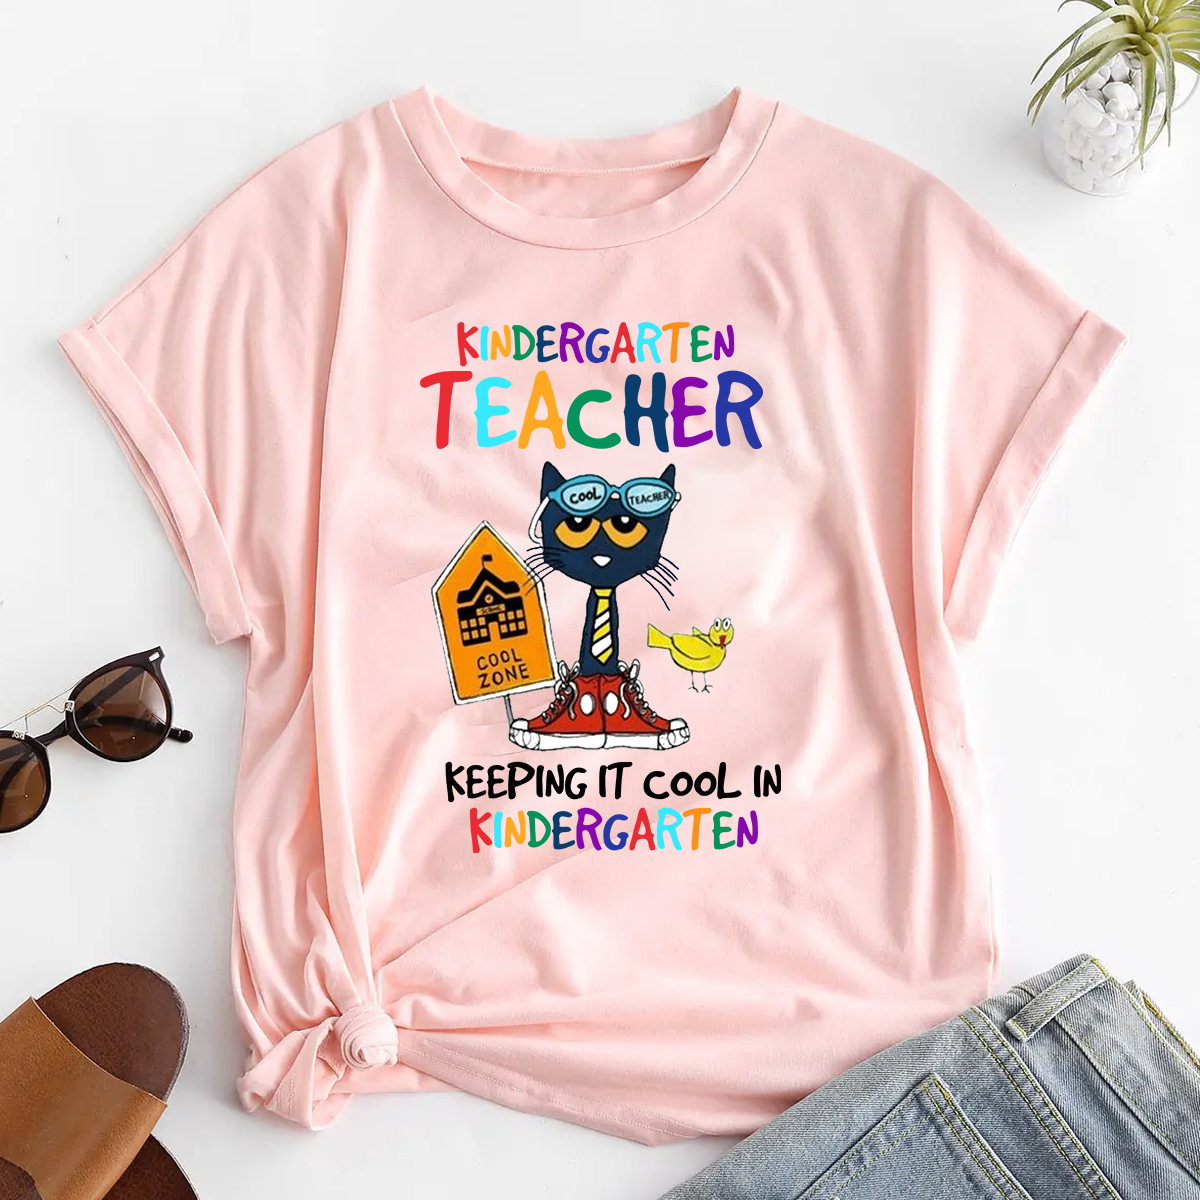 Custom Pete The Cat Kindergarten shirt, Its All Good With Ms Shirt, Teacher T-shirt, LGBT shirt, Back to School Tshirt, Kindergarten tee